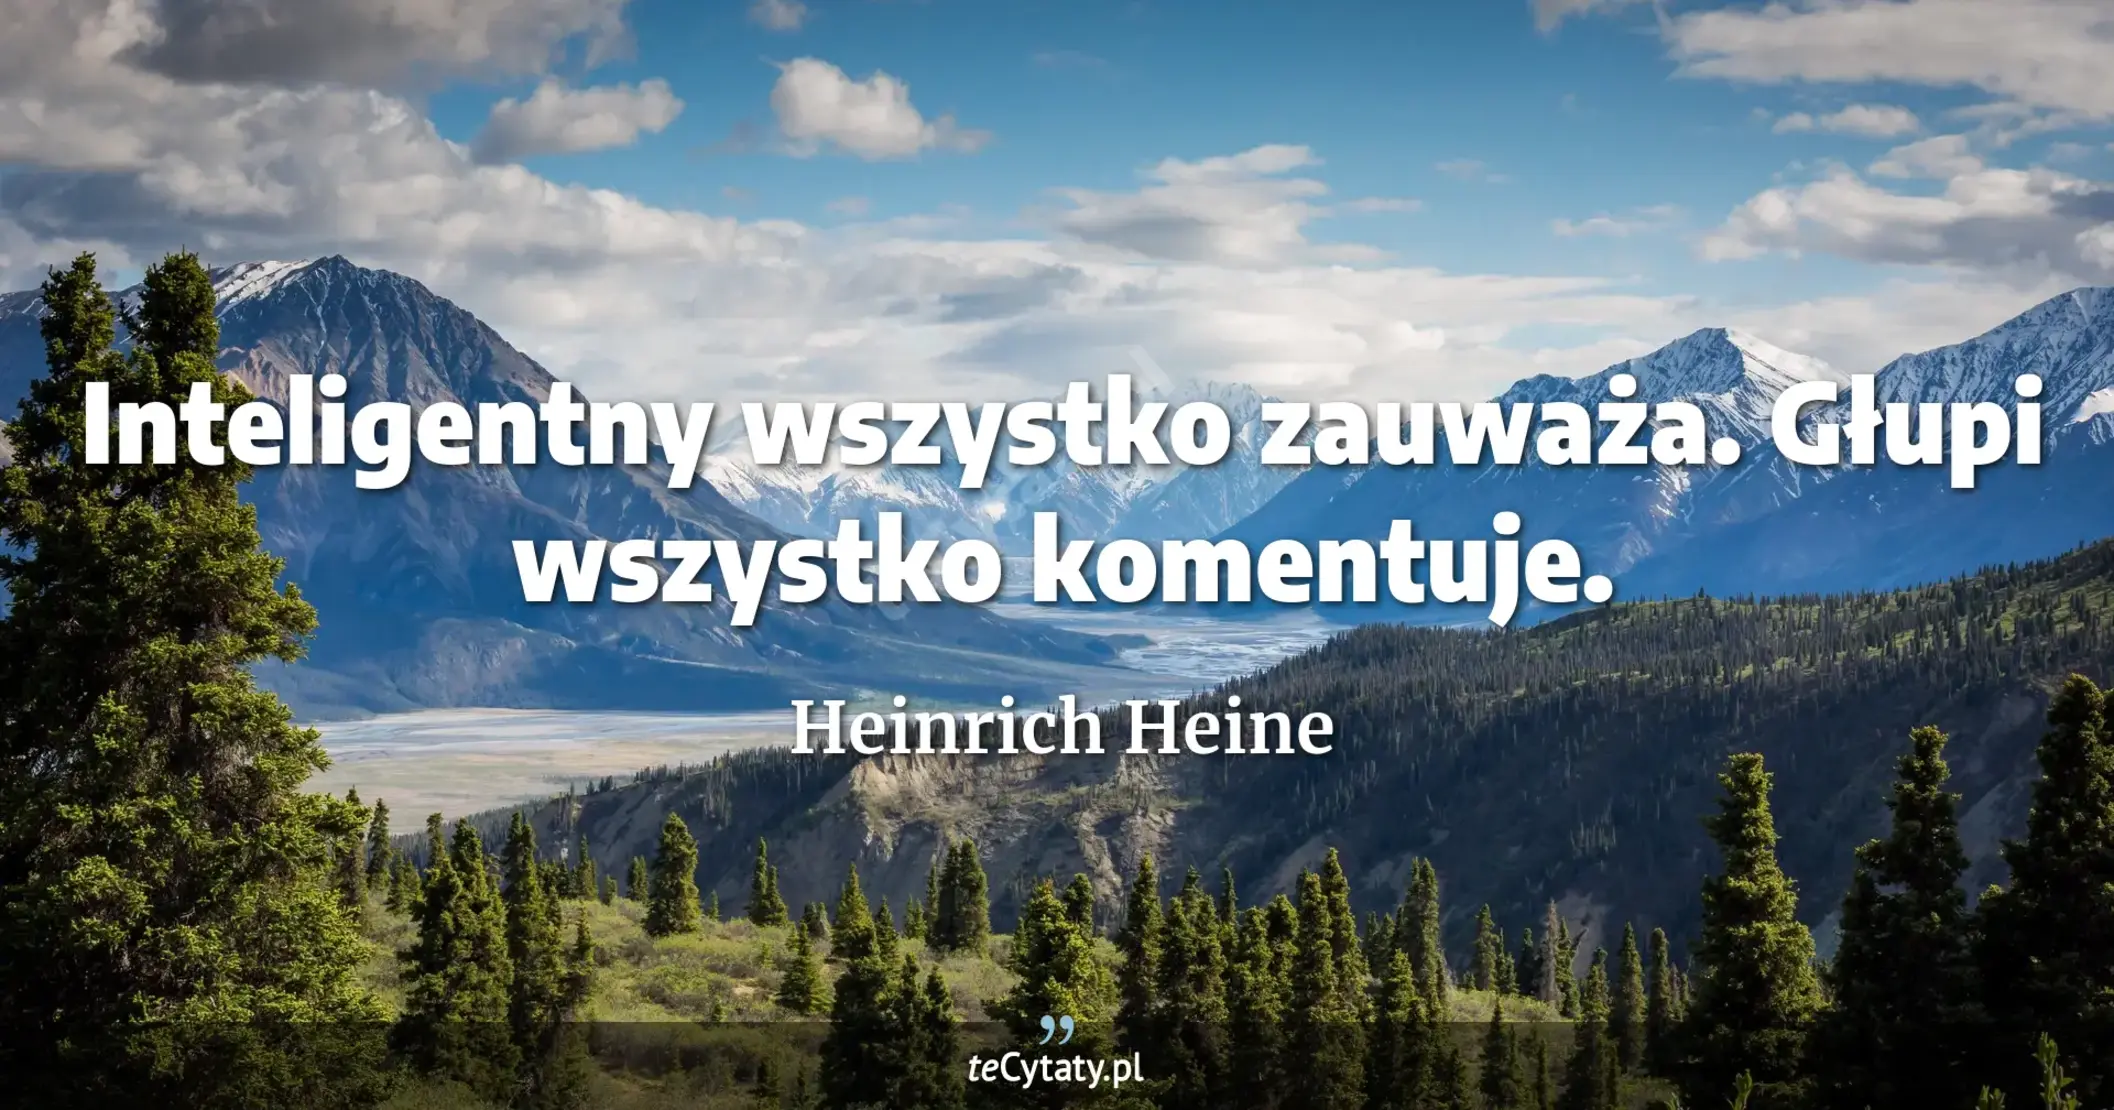 Inteligentny wszystko zauważa. Głupi wszystko komentuje. - Heinrich Heine